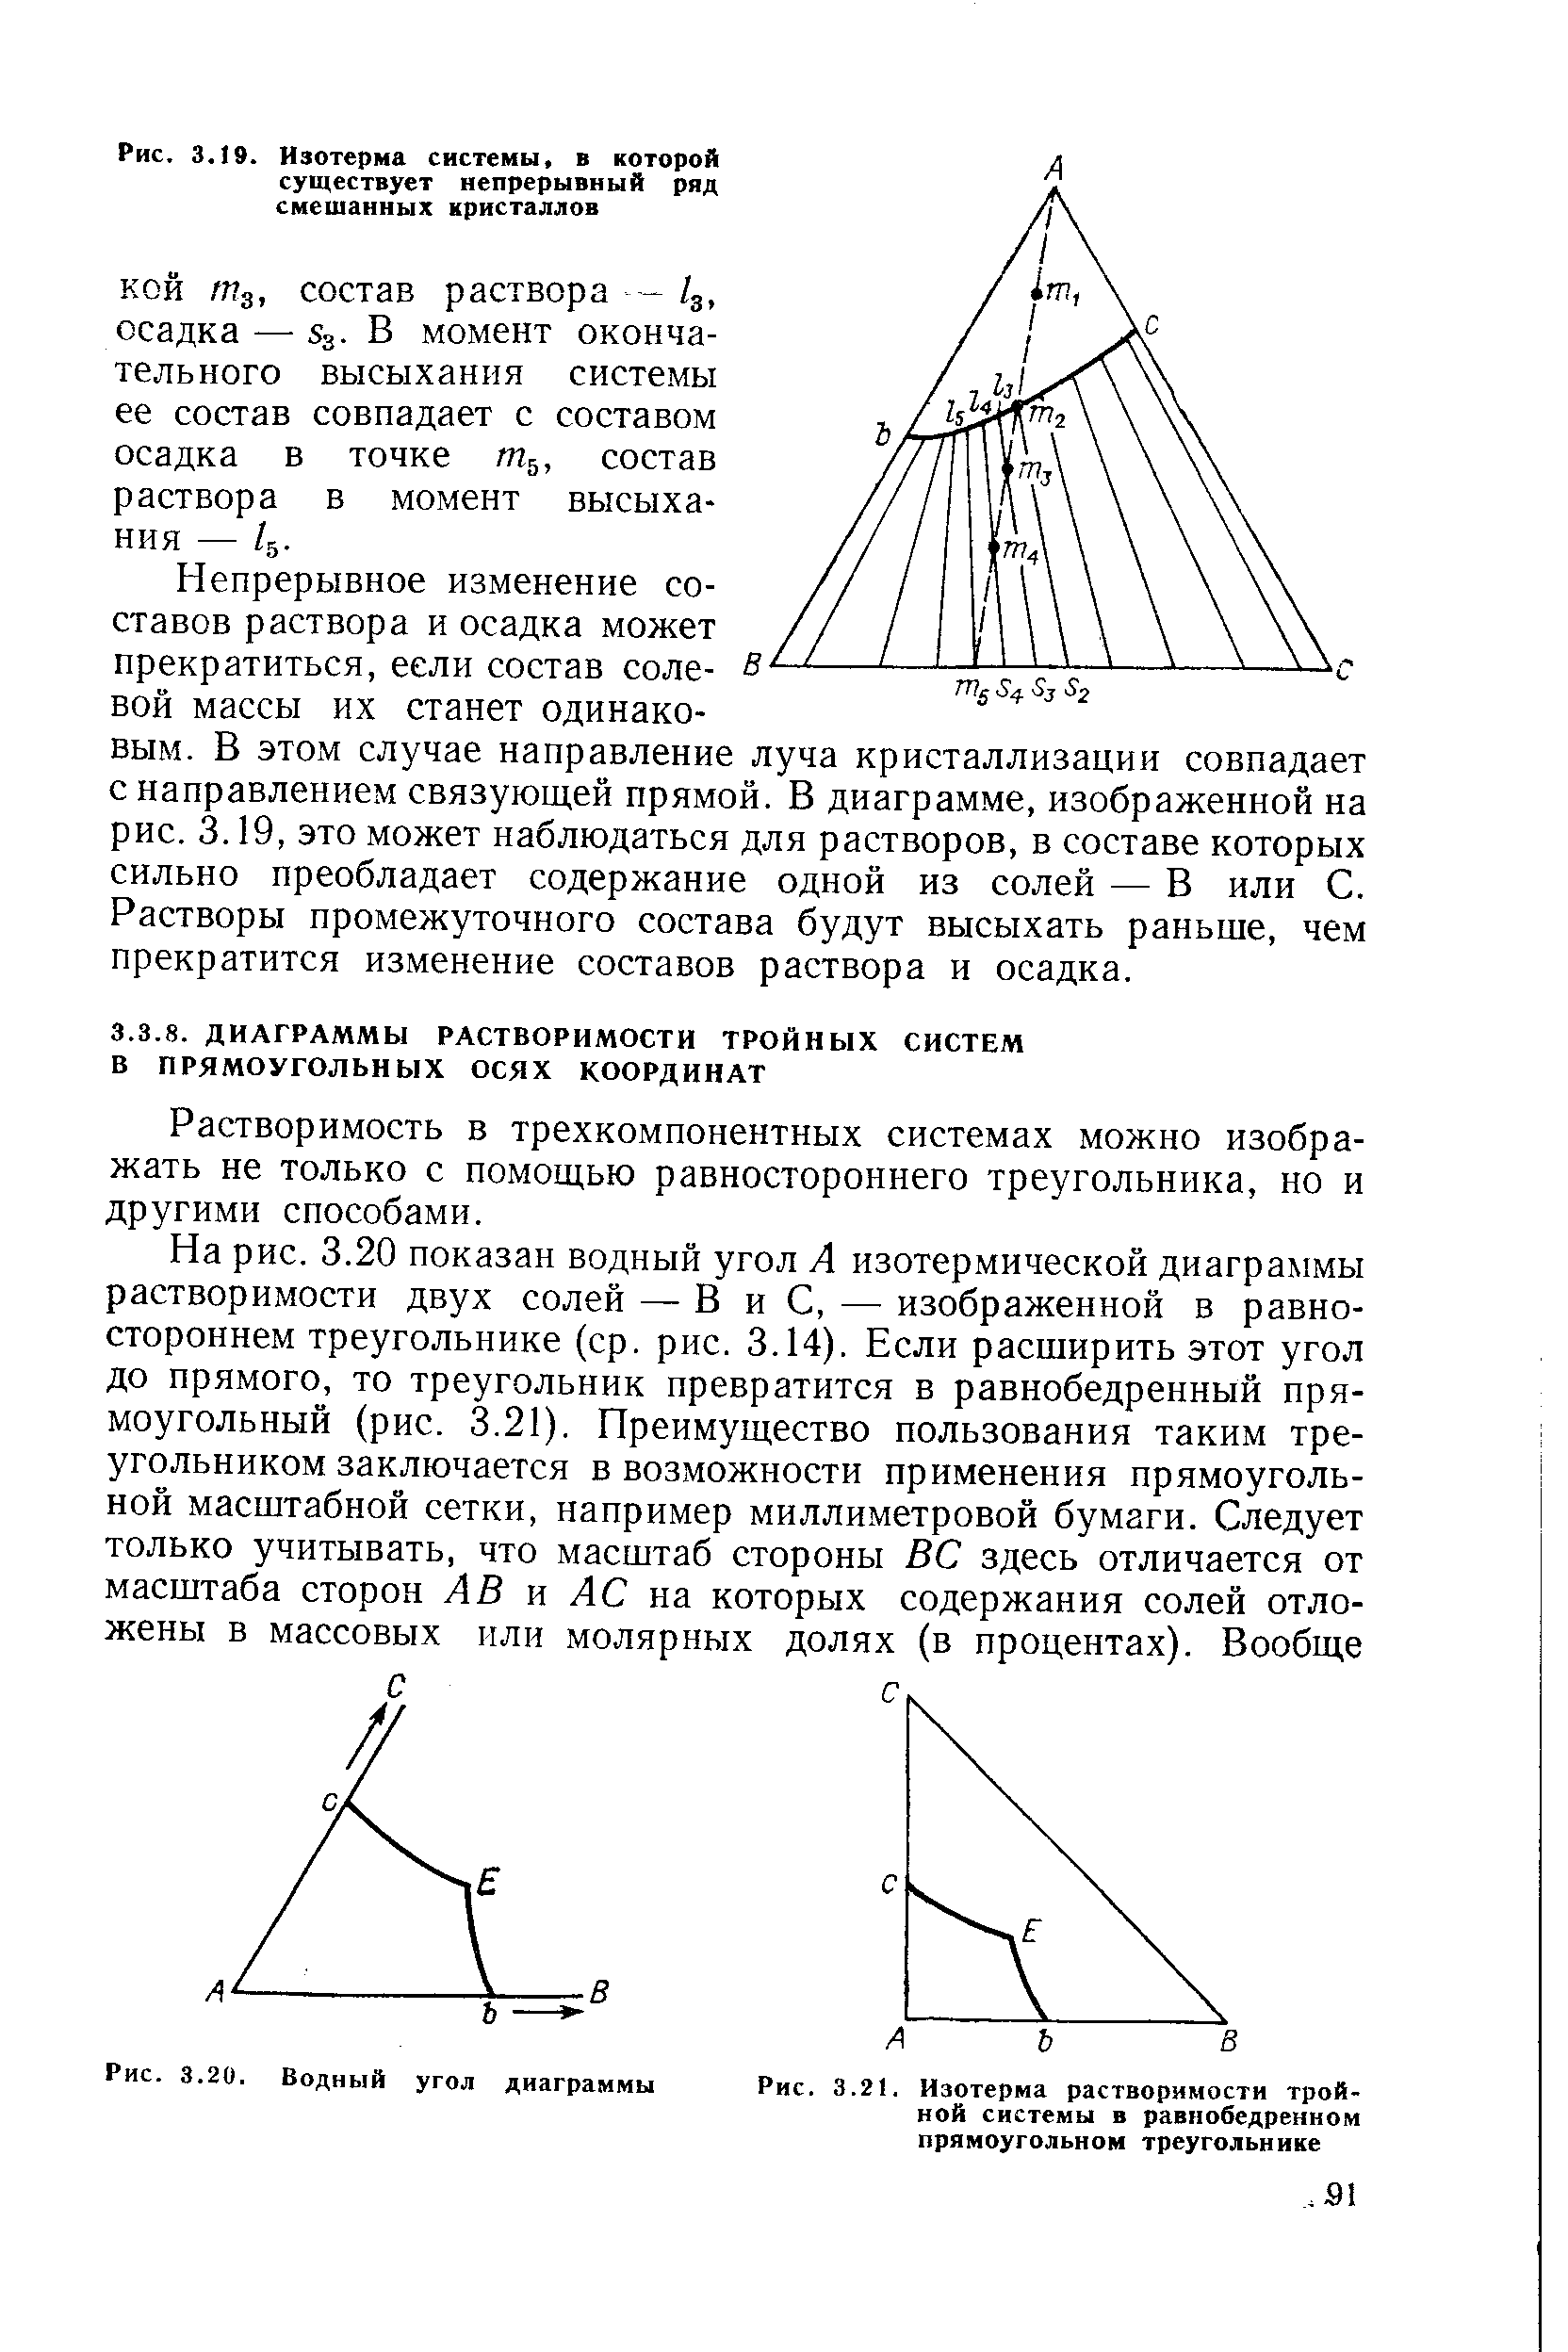 Растворимость в трехкомпонентных системах можно изображать не только с помощью равностороннего треугольника, но и другими способами.